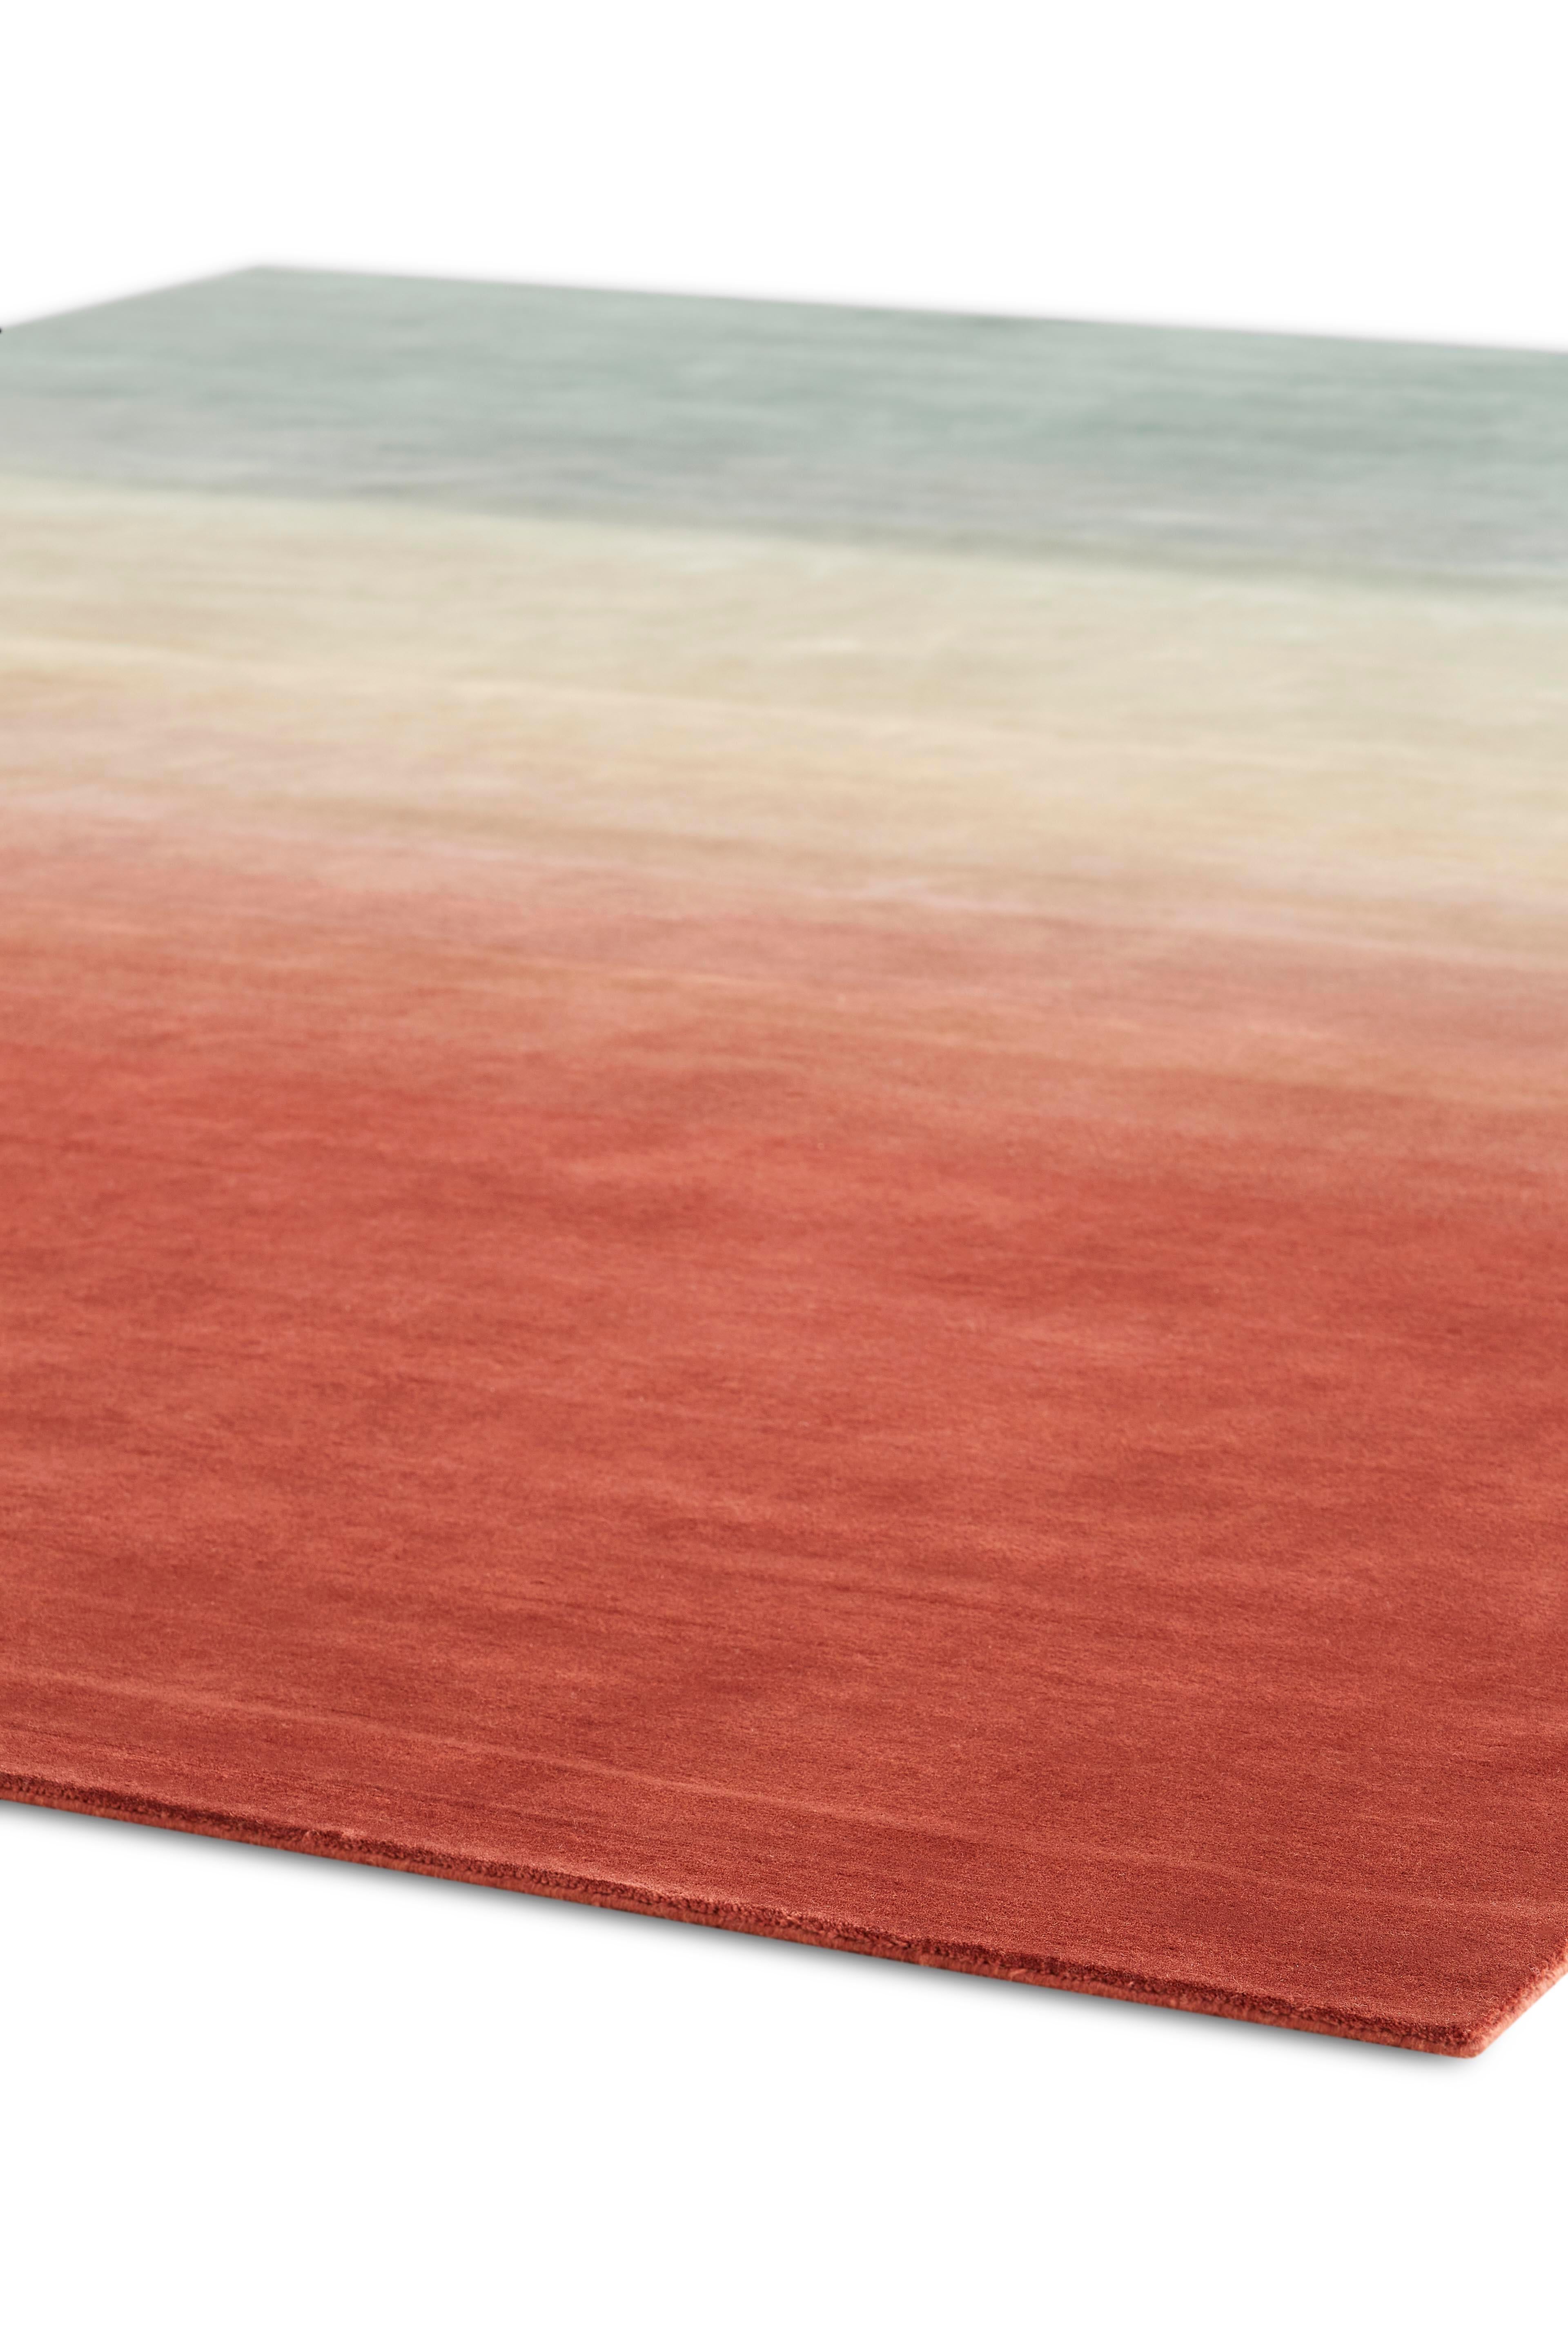 Degrade ist der jüngste Beitrag von Patricia Urquiola zur Kollektion der handgeknüpften Teppiche von GAN. Nüchtern und elegant, spielen diese Teppiche mit Farben und Zwischentönen und demonstrieren die Kompetenz, die den Designer auszeichnet. Die